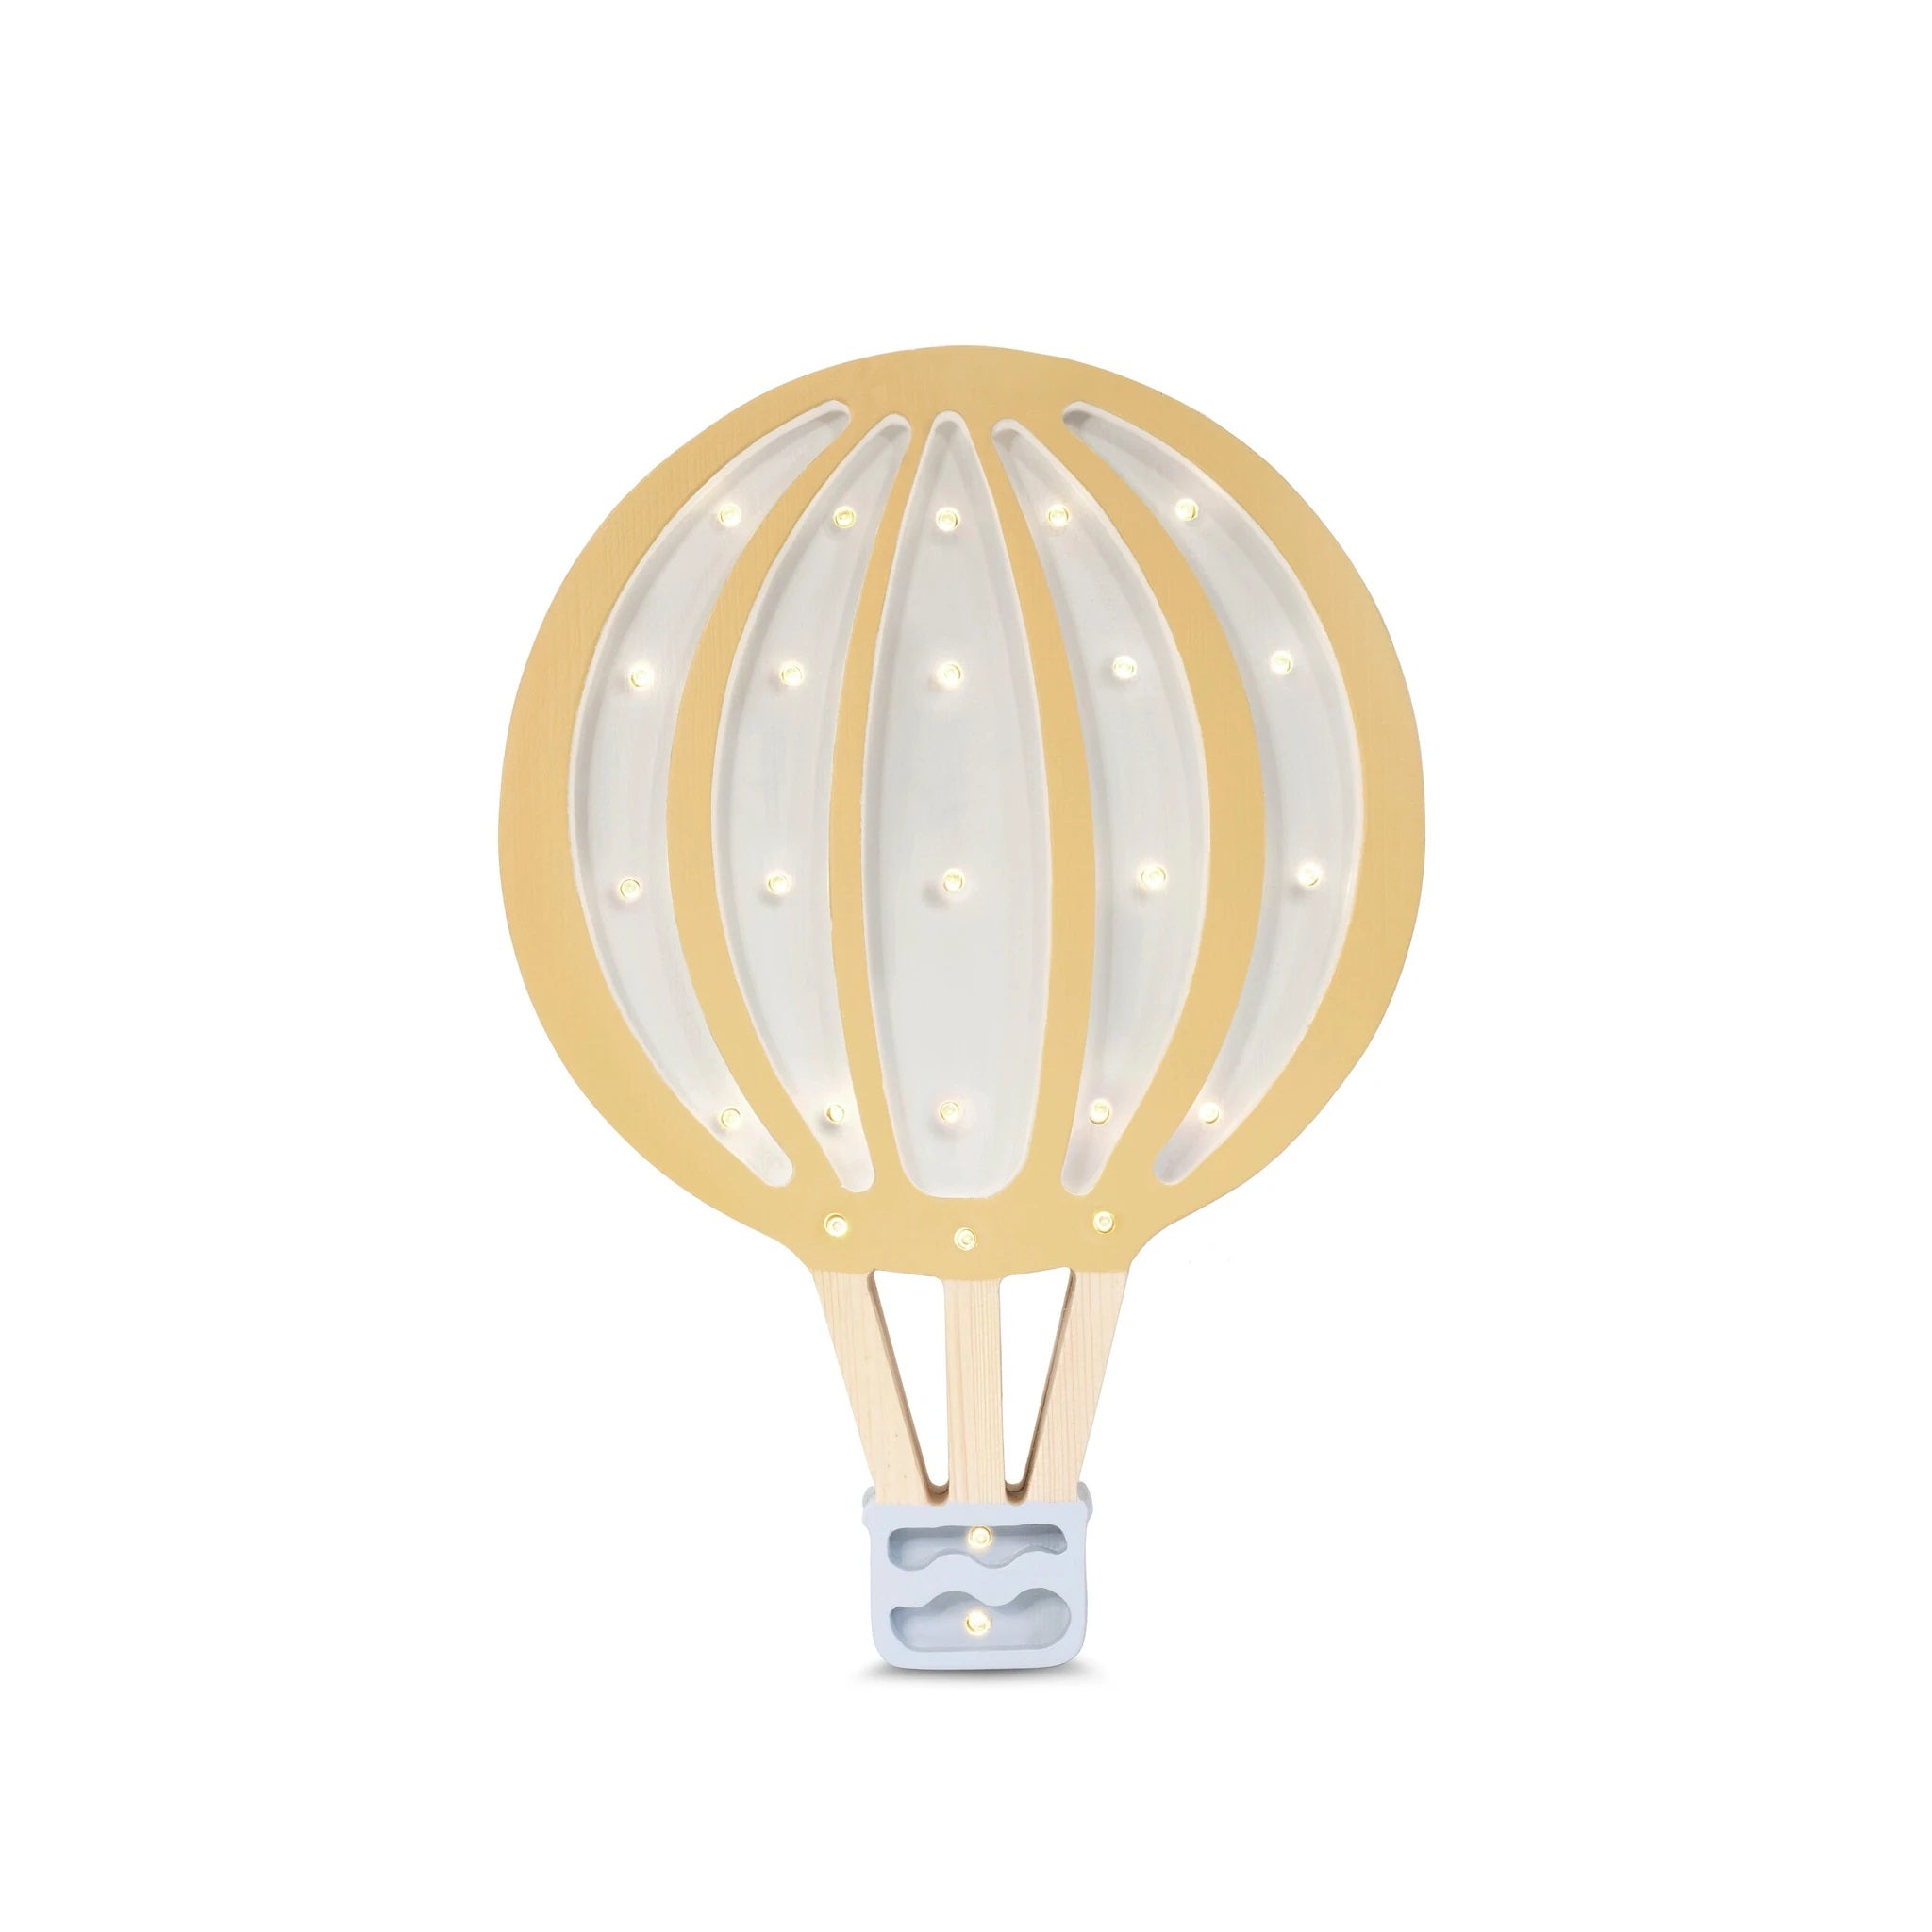 Hot Air Balloon Lamp